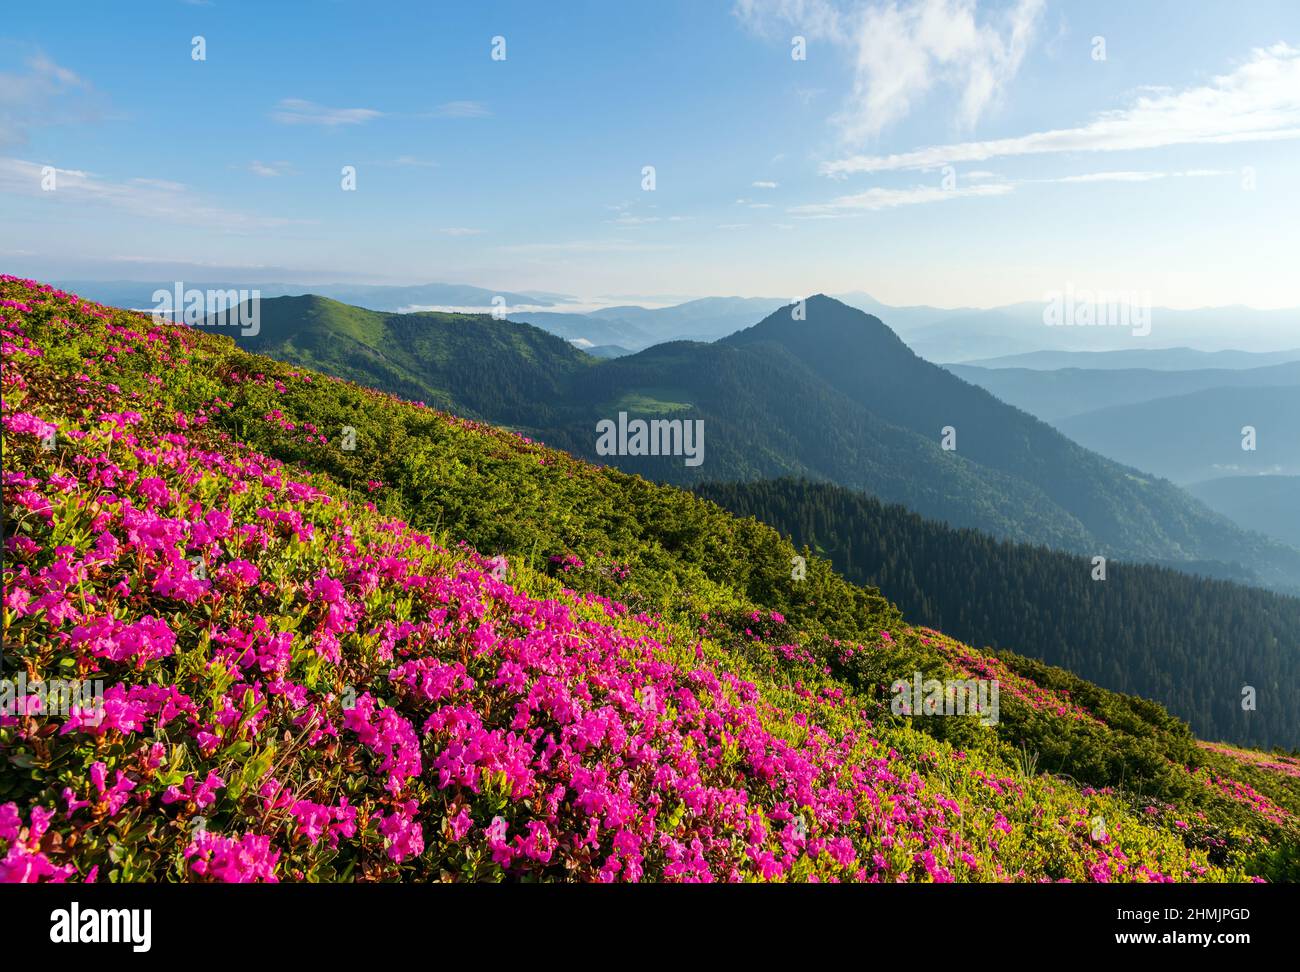 Rhododendron-Blüten blühen auf dem hohen wilden Berg. Naturlandschaft. Standort Karpaten, Ukraine, Europa. Hintergrund des Hintergrundbilds. Stockfoto